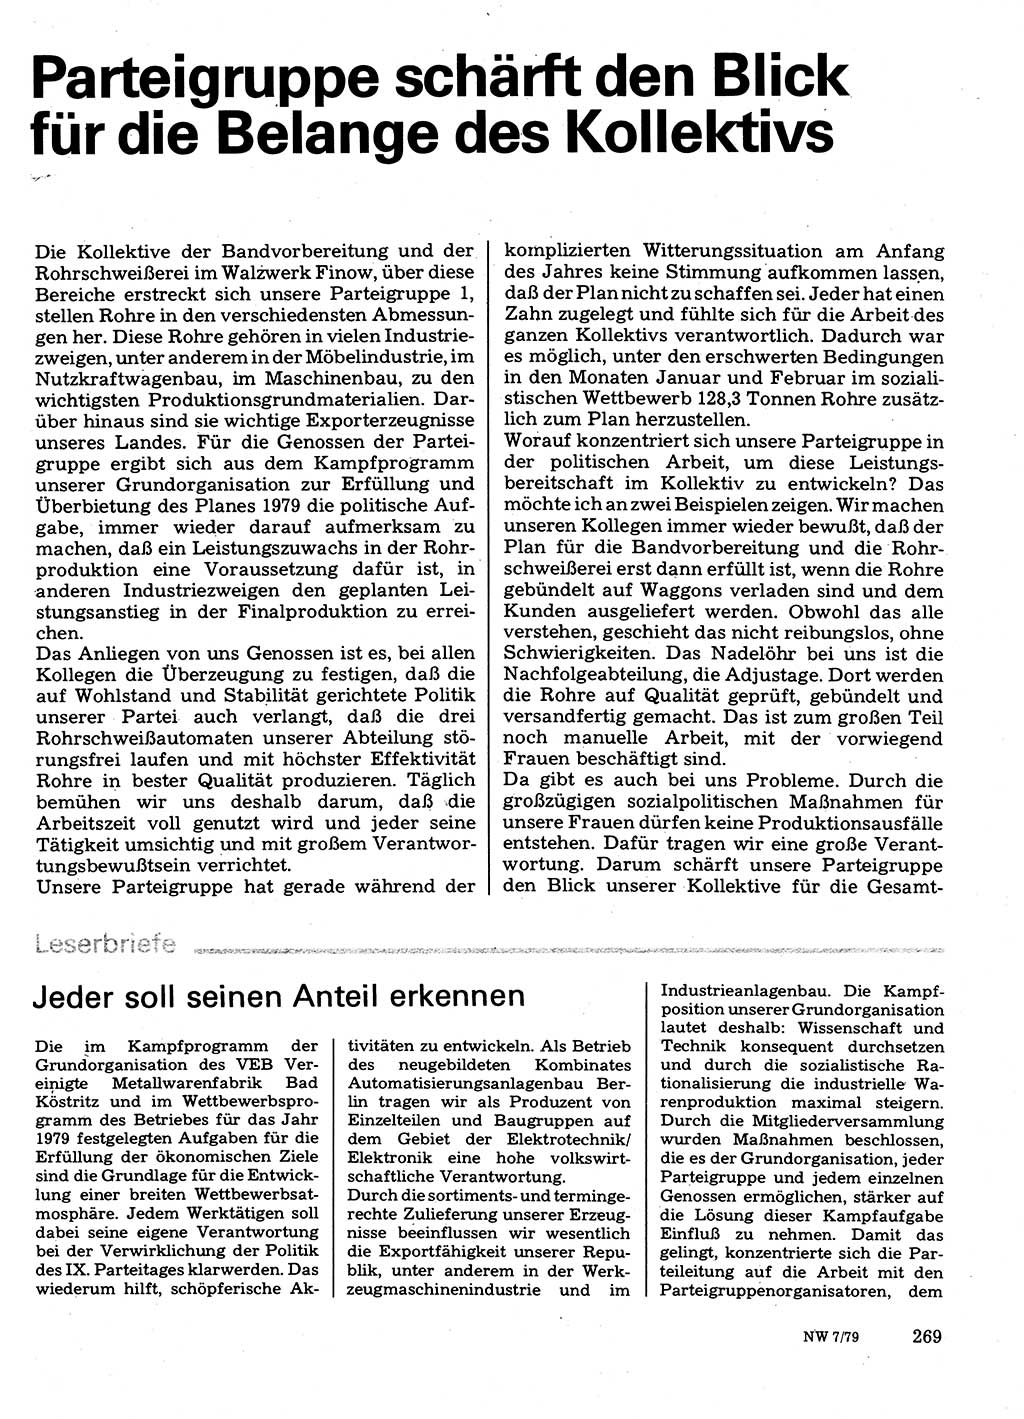 Neuer Weg (NW), Organ des Zentralkomitees (ZK) der SED (Sozialistische Einheitspartei Deutschlands) für Fragen des Parteilebens, 34. Jahrgang [Deutsche Demokratische Republik (DDR)] 1979, Seite 269 (NW ZK SED DDR 1979, S. 269)